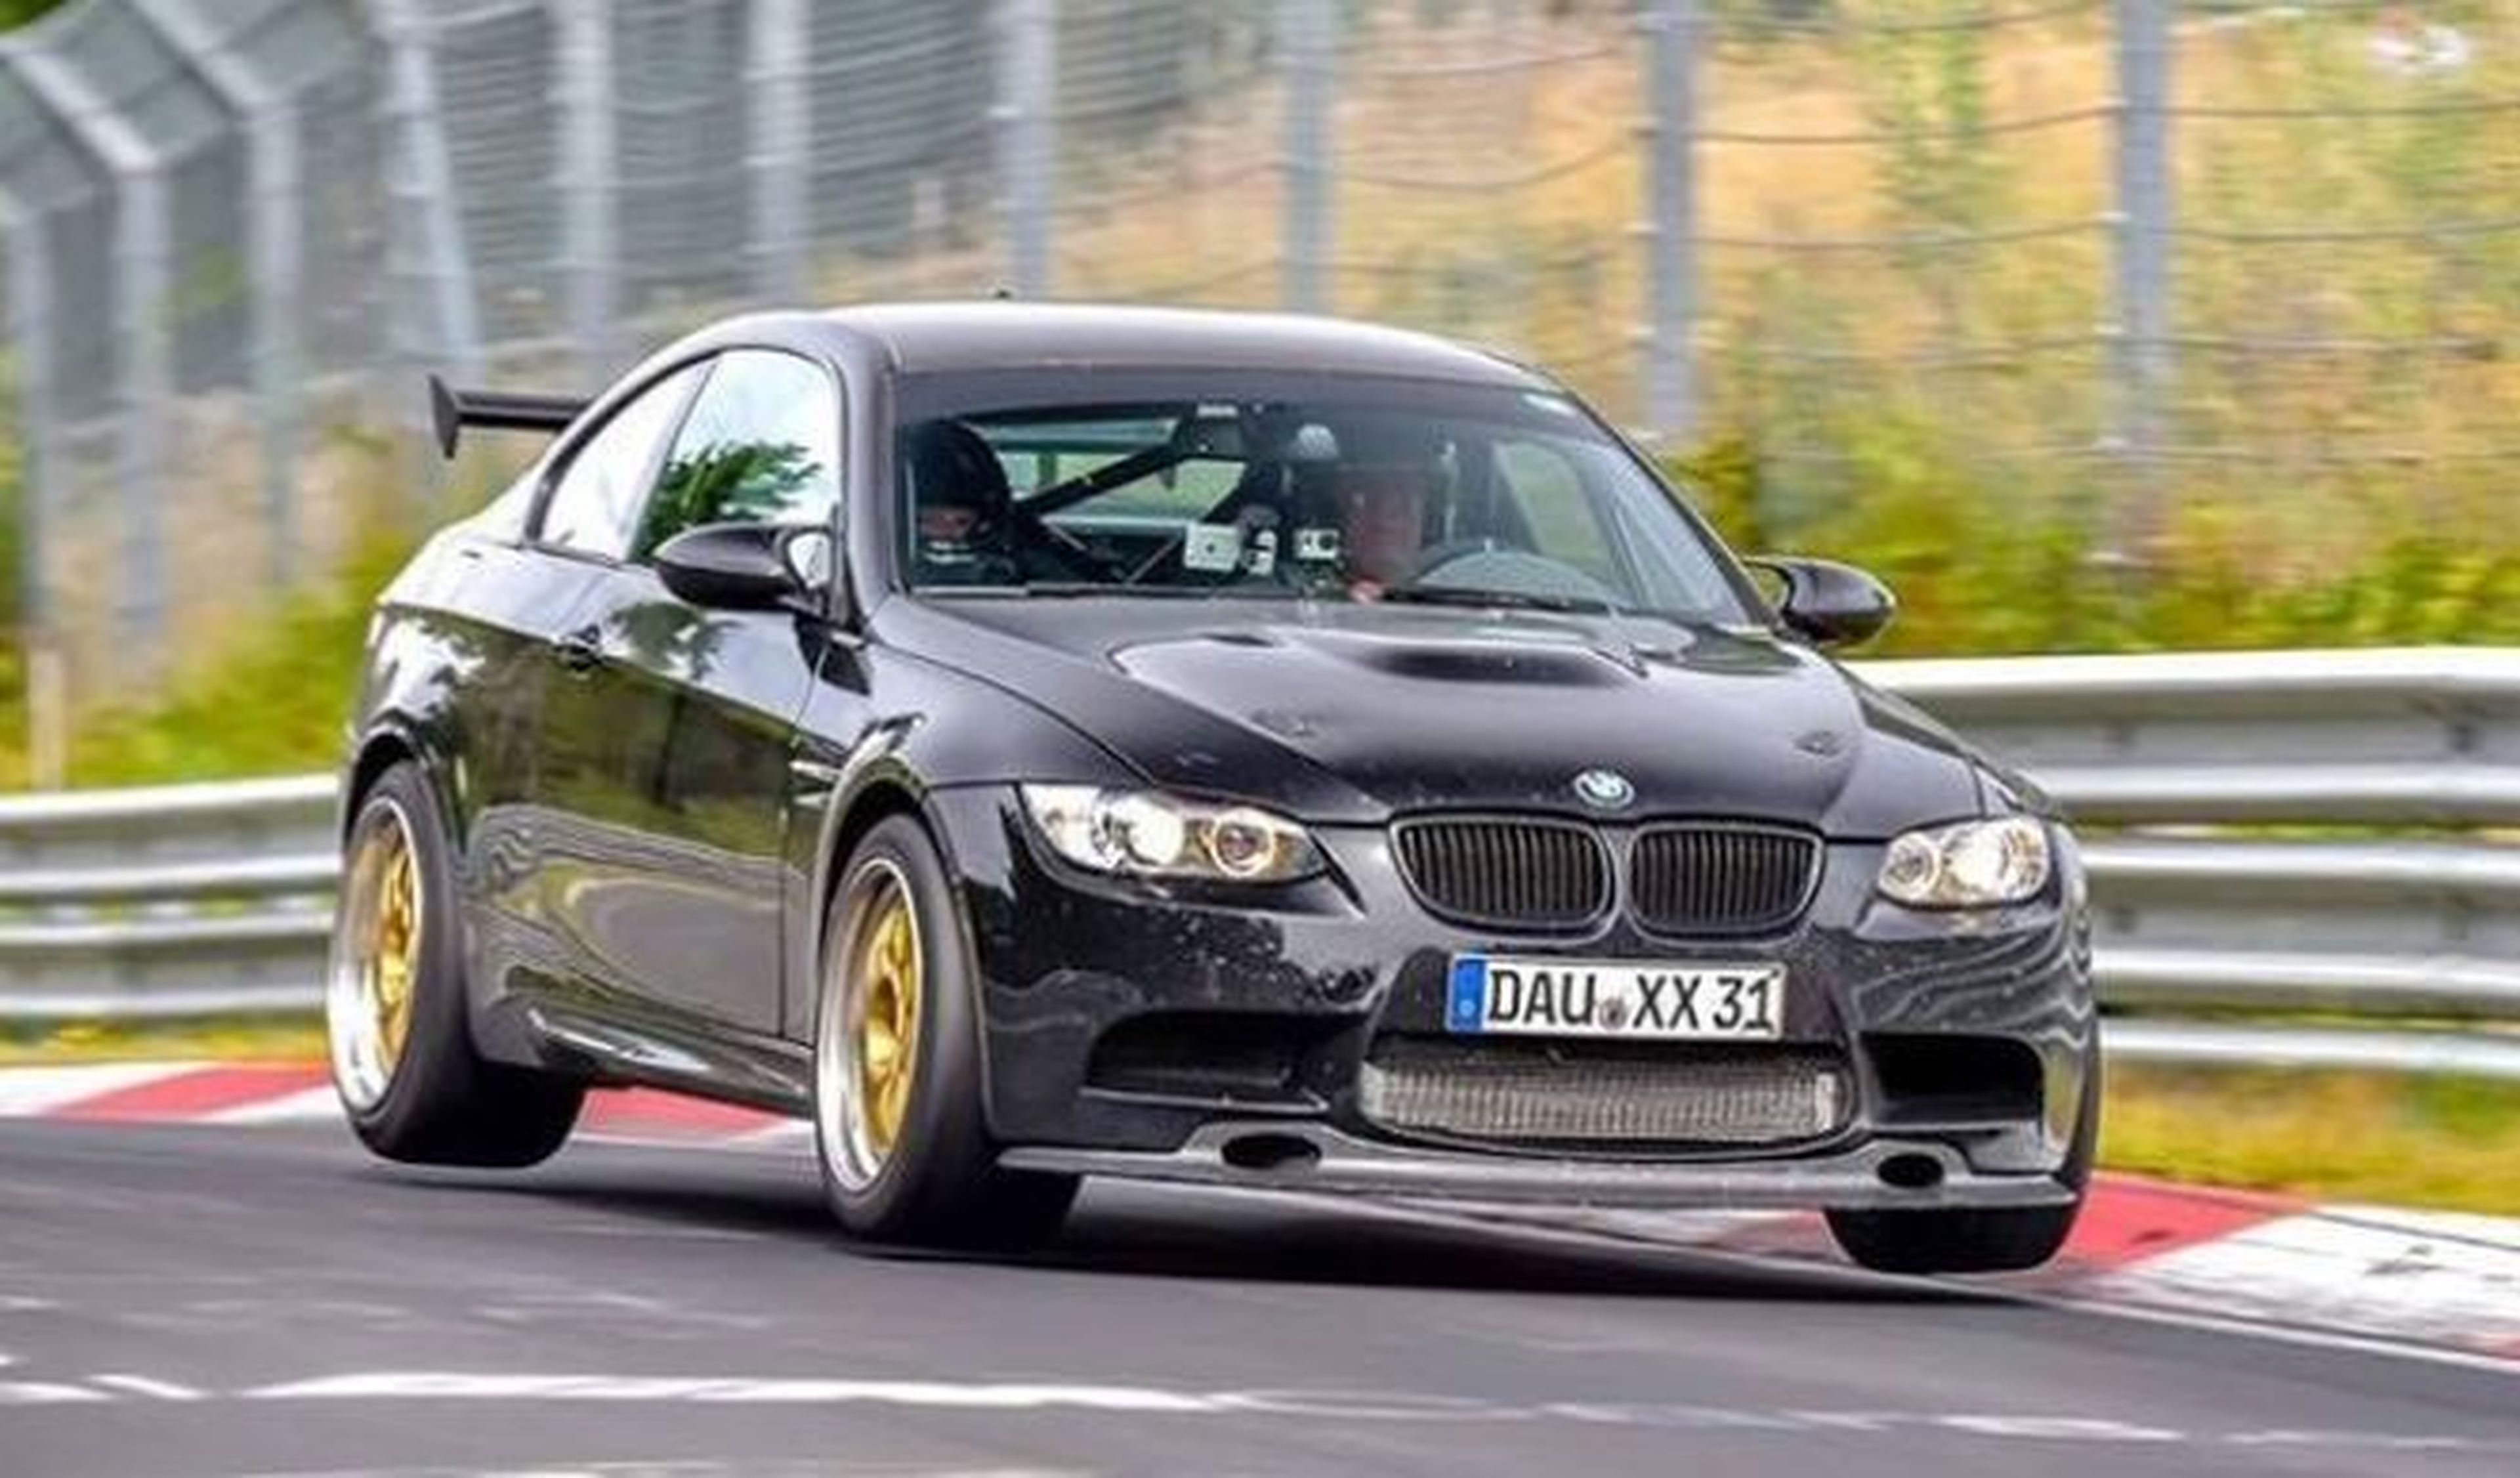 Vídeo: el BMW M3 más rápido de Nürburgring